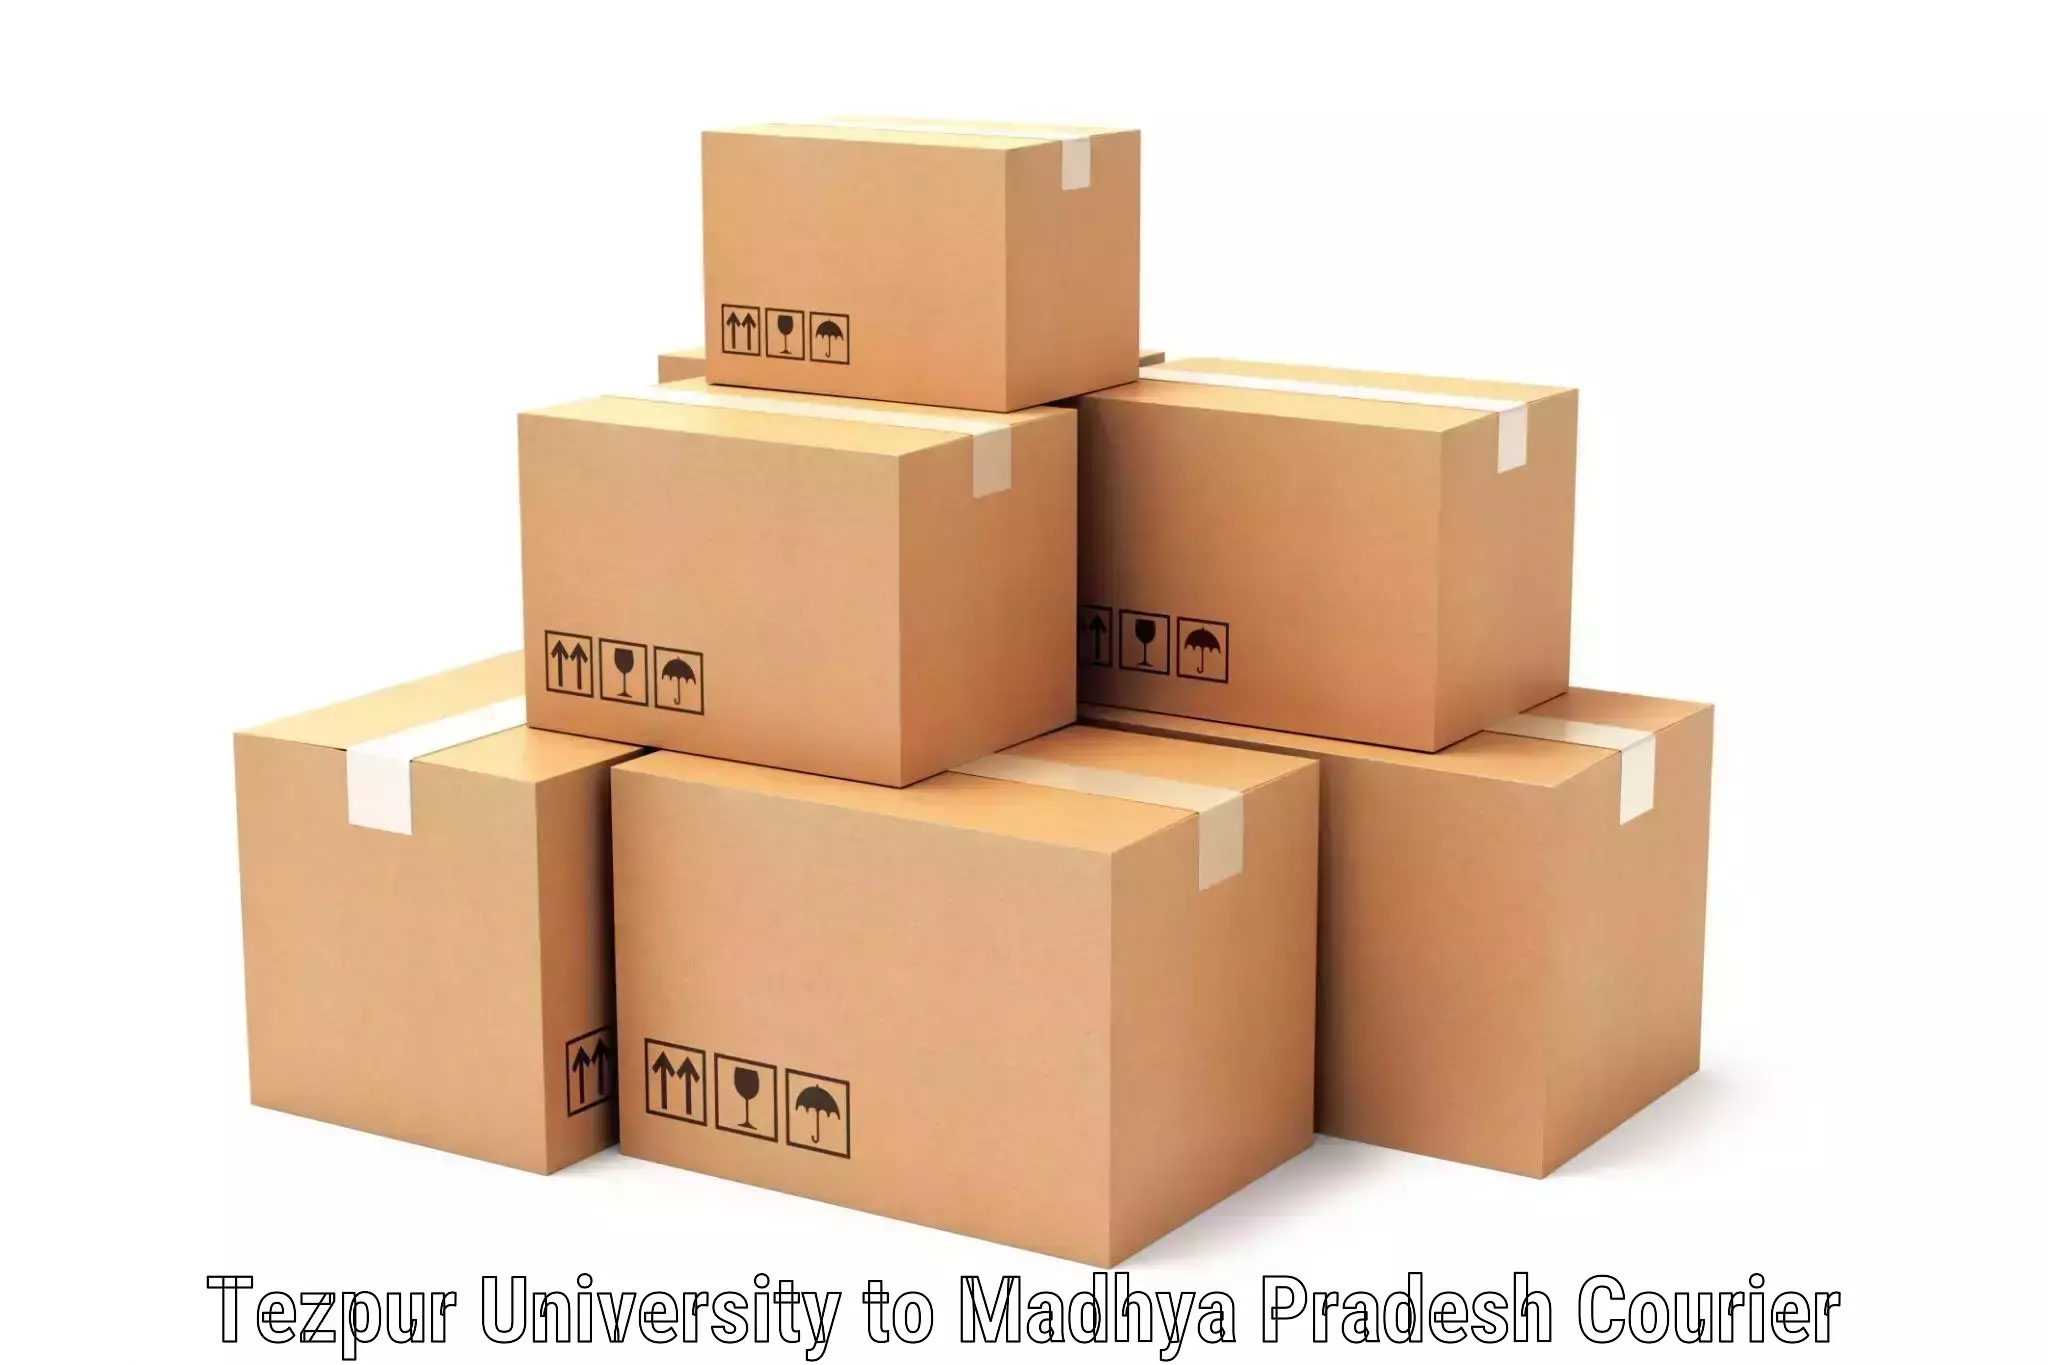 Efficient parcel service Tezpur University to Burhanpur